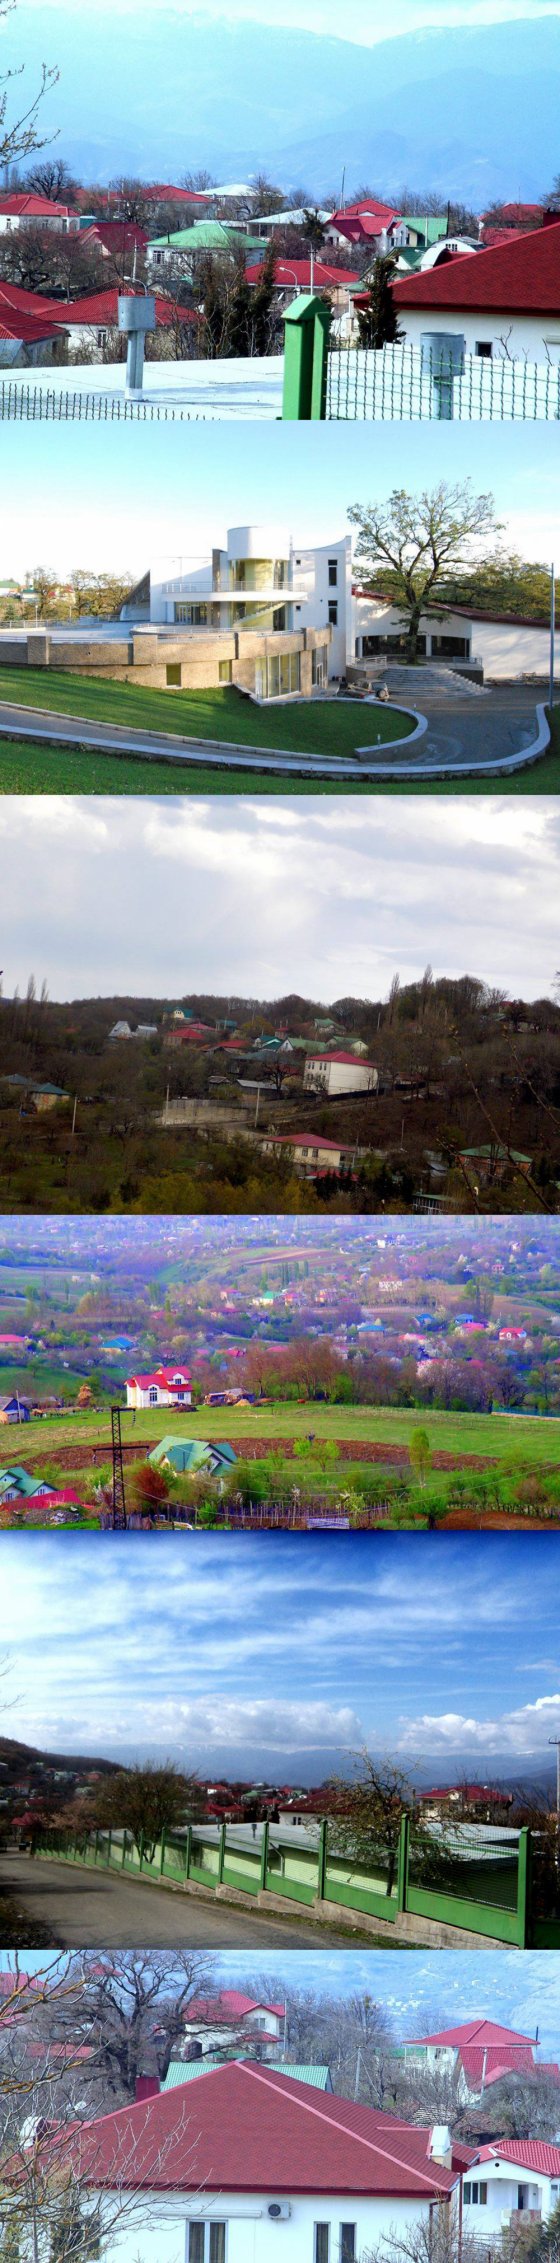 ეს ევროპული სოფელი საქართველოში მდებარეობს და მას ჭორვილა ჰქვია